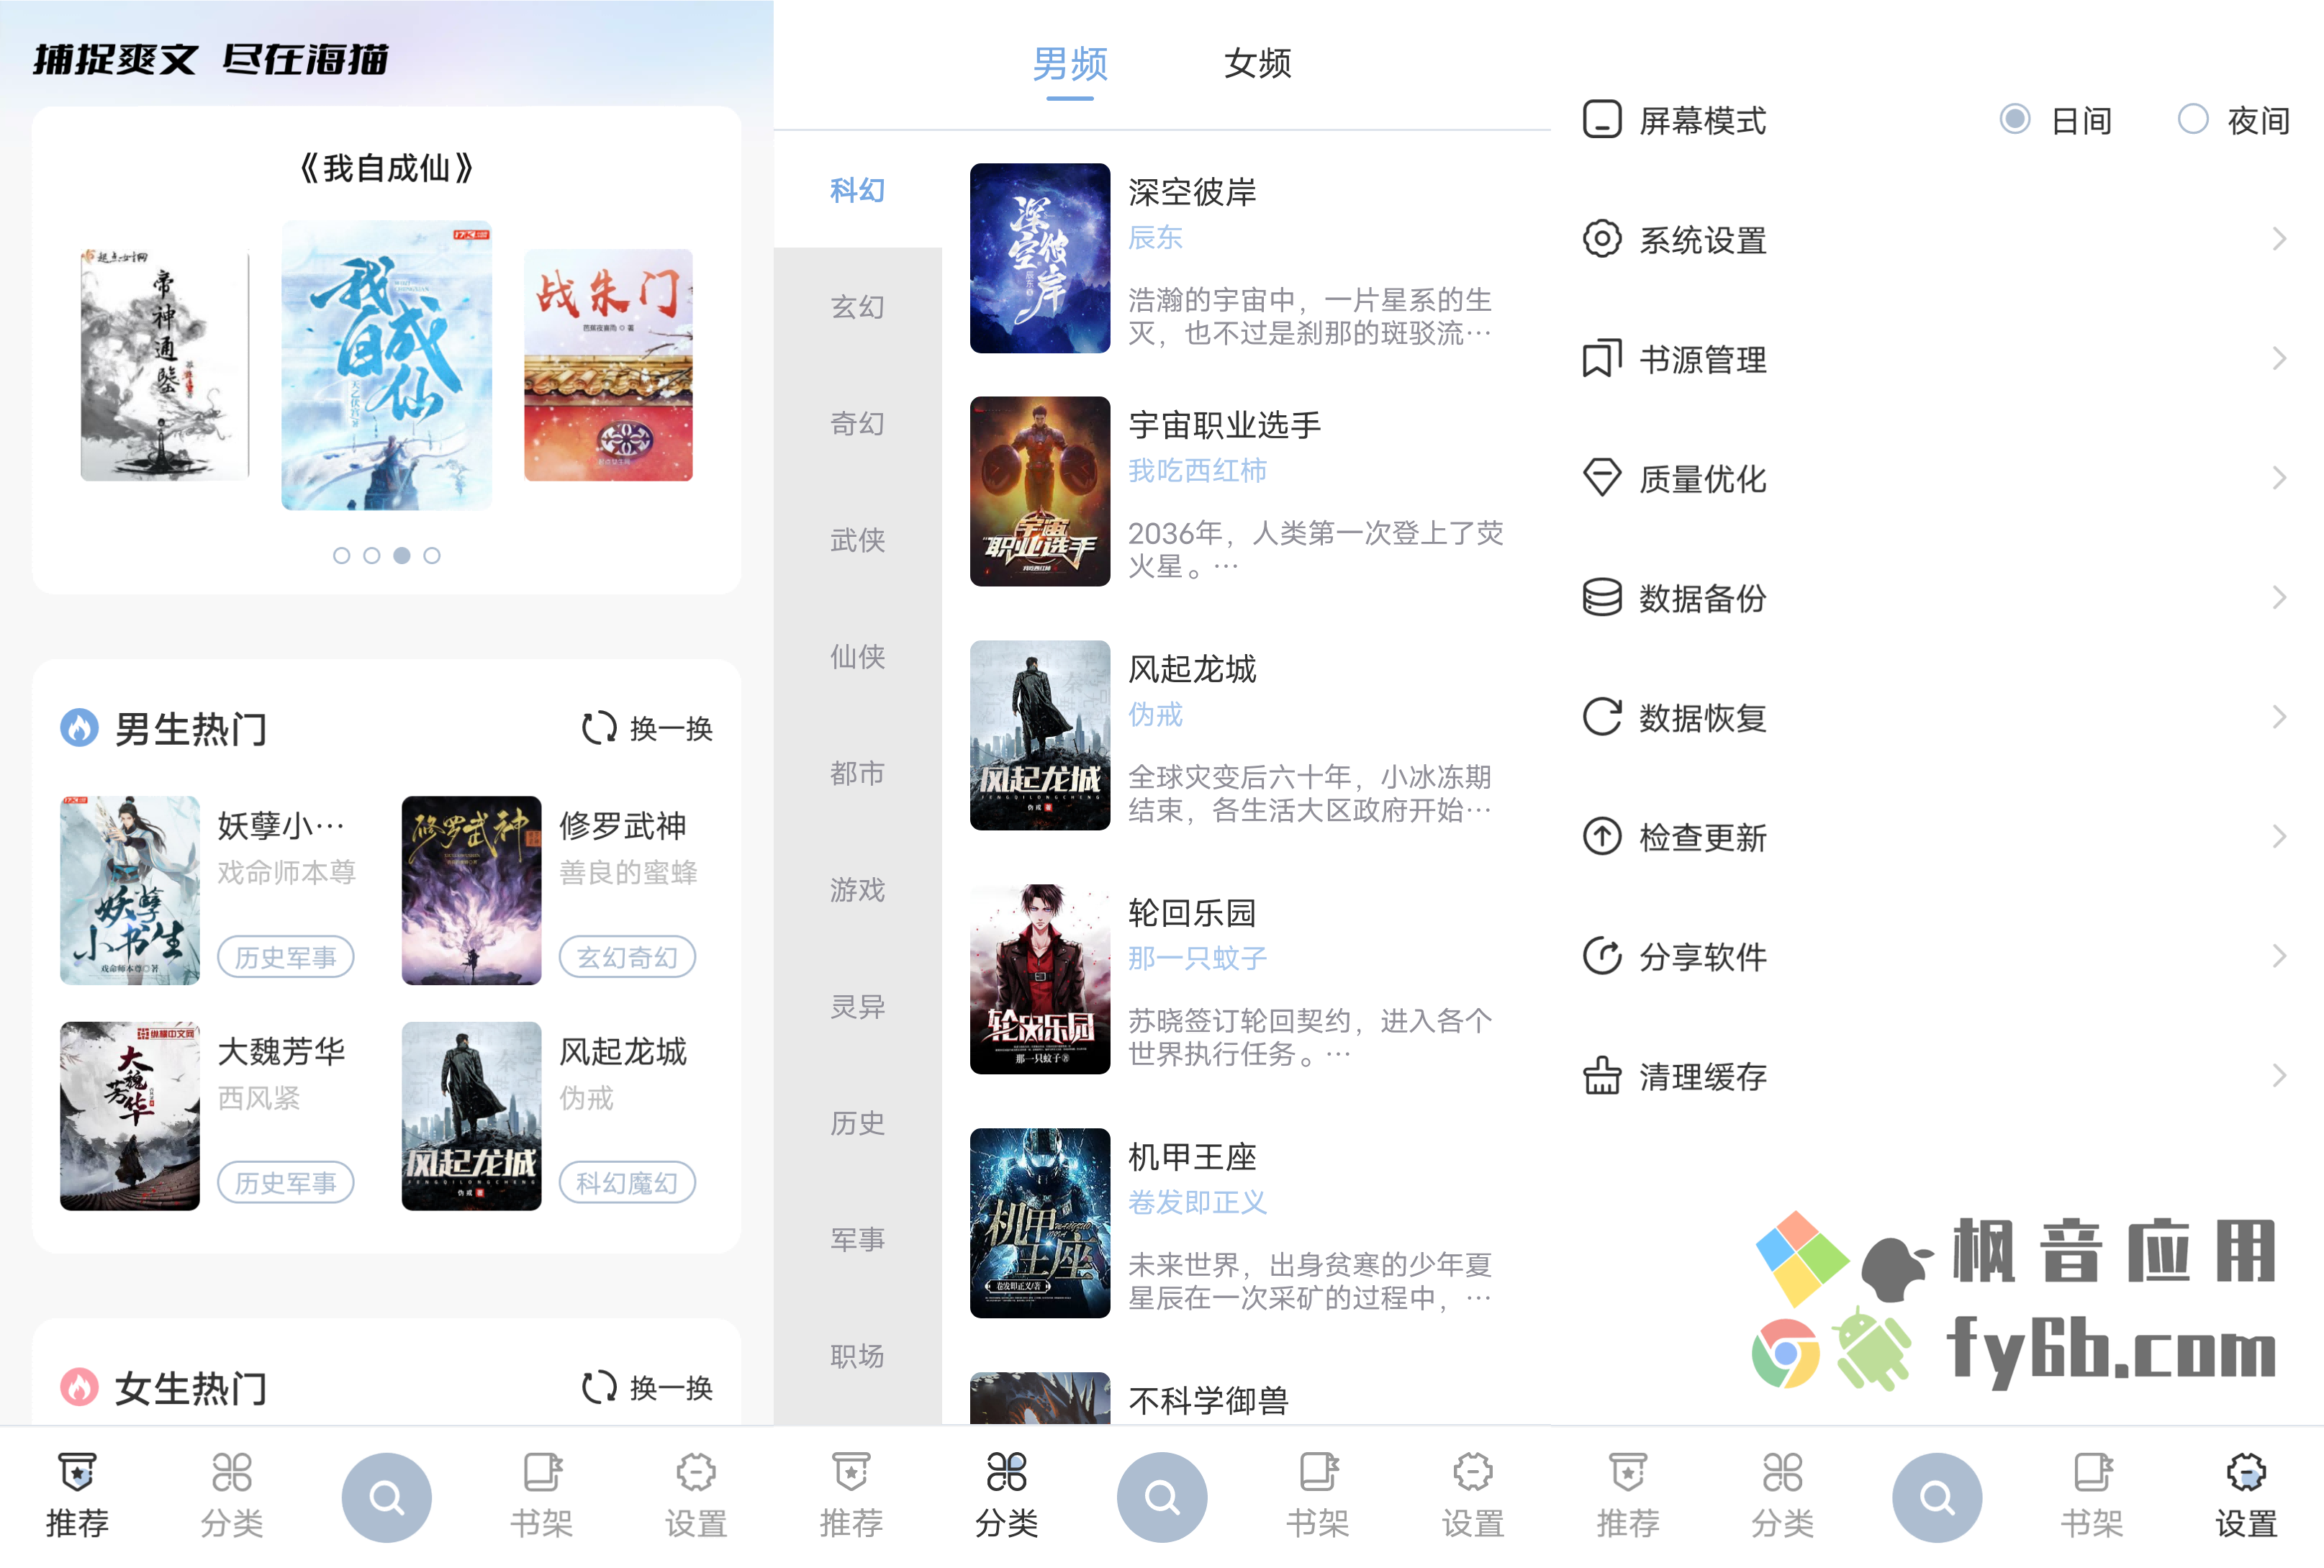 Android 海猫小说_v1.0.3 免费纯净版